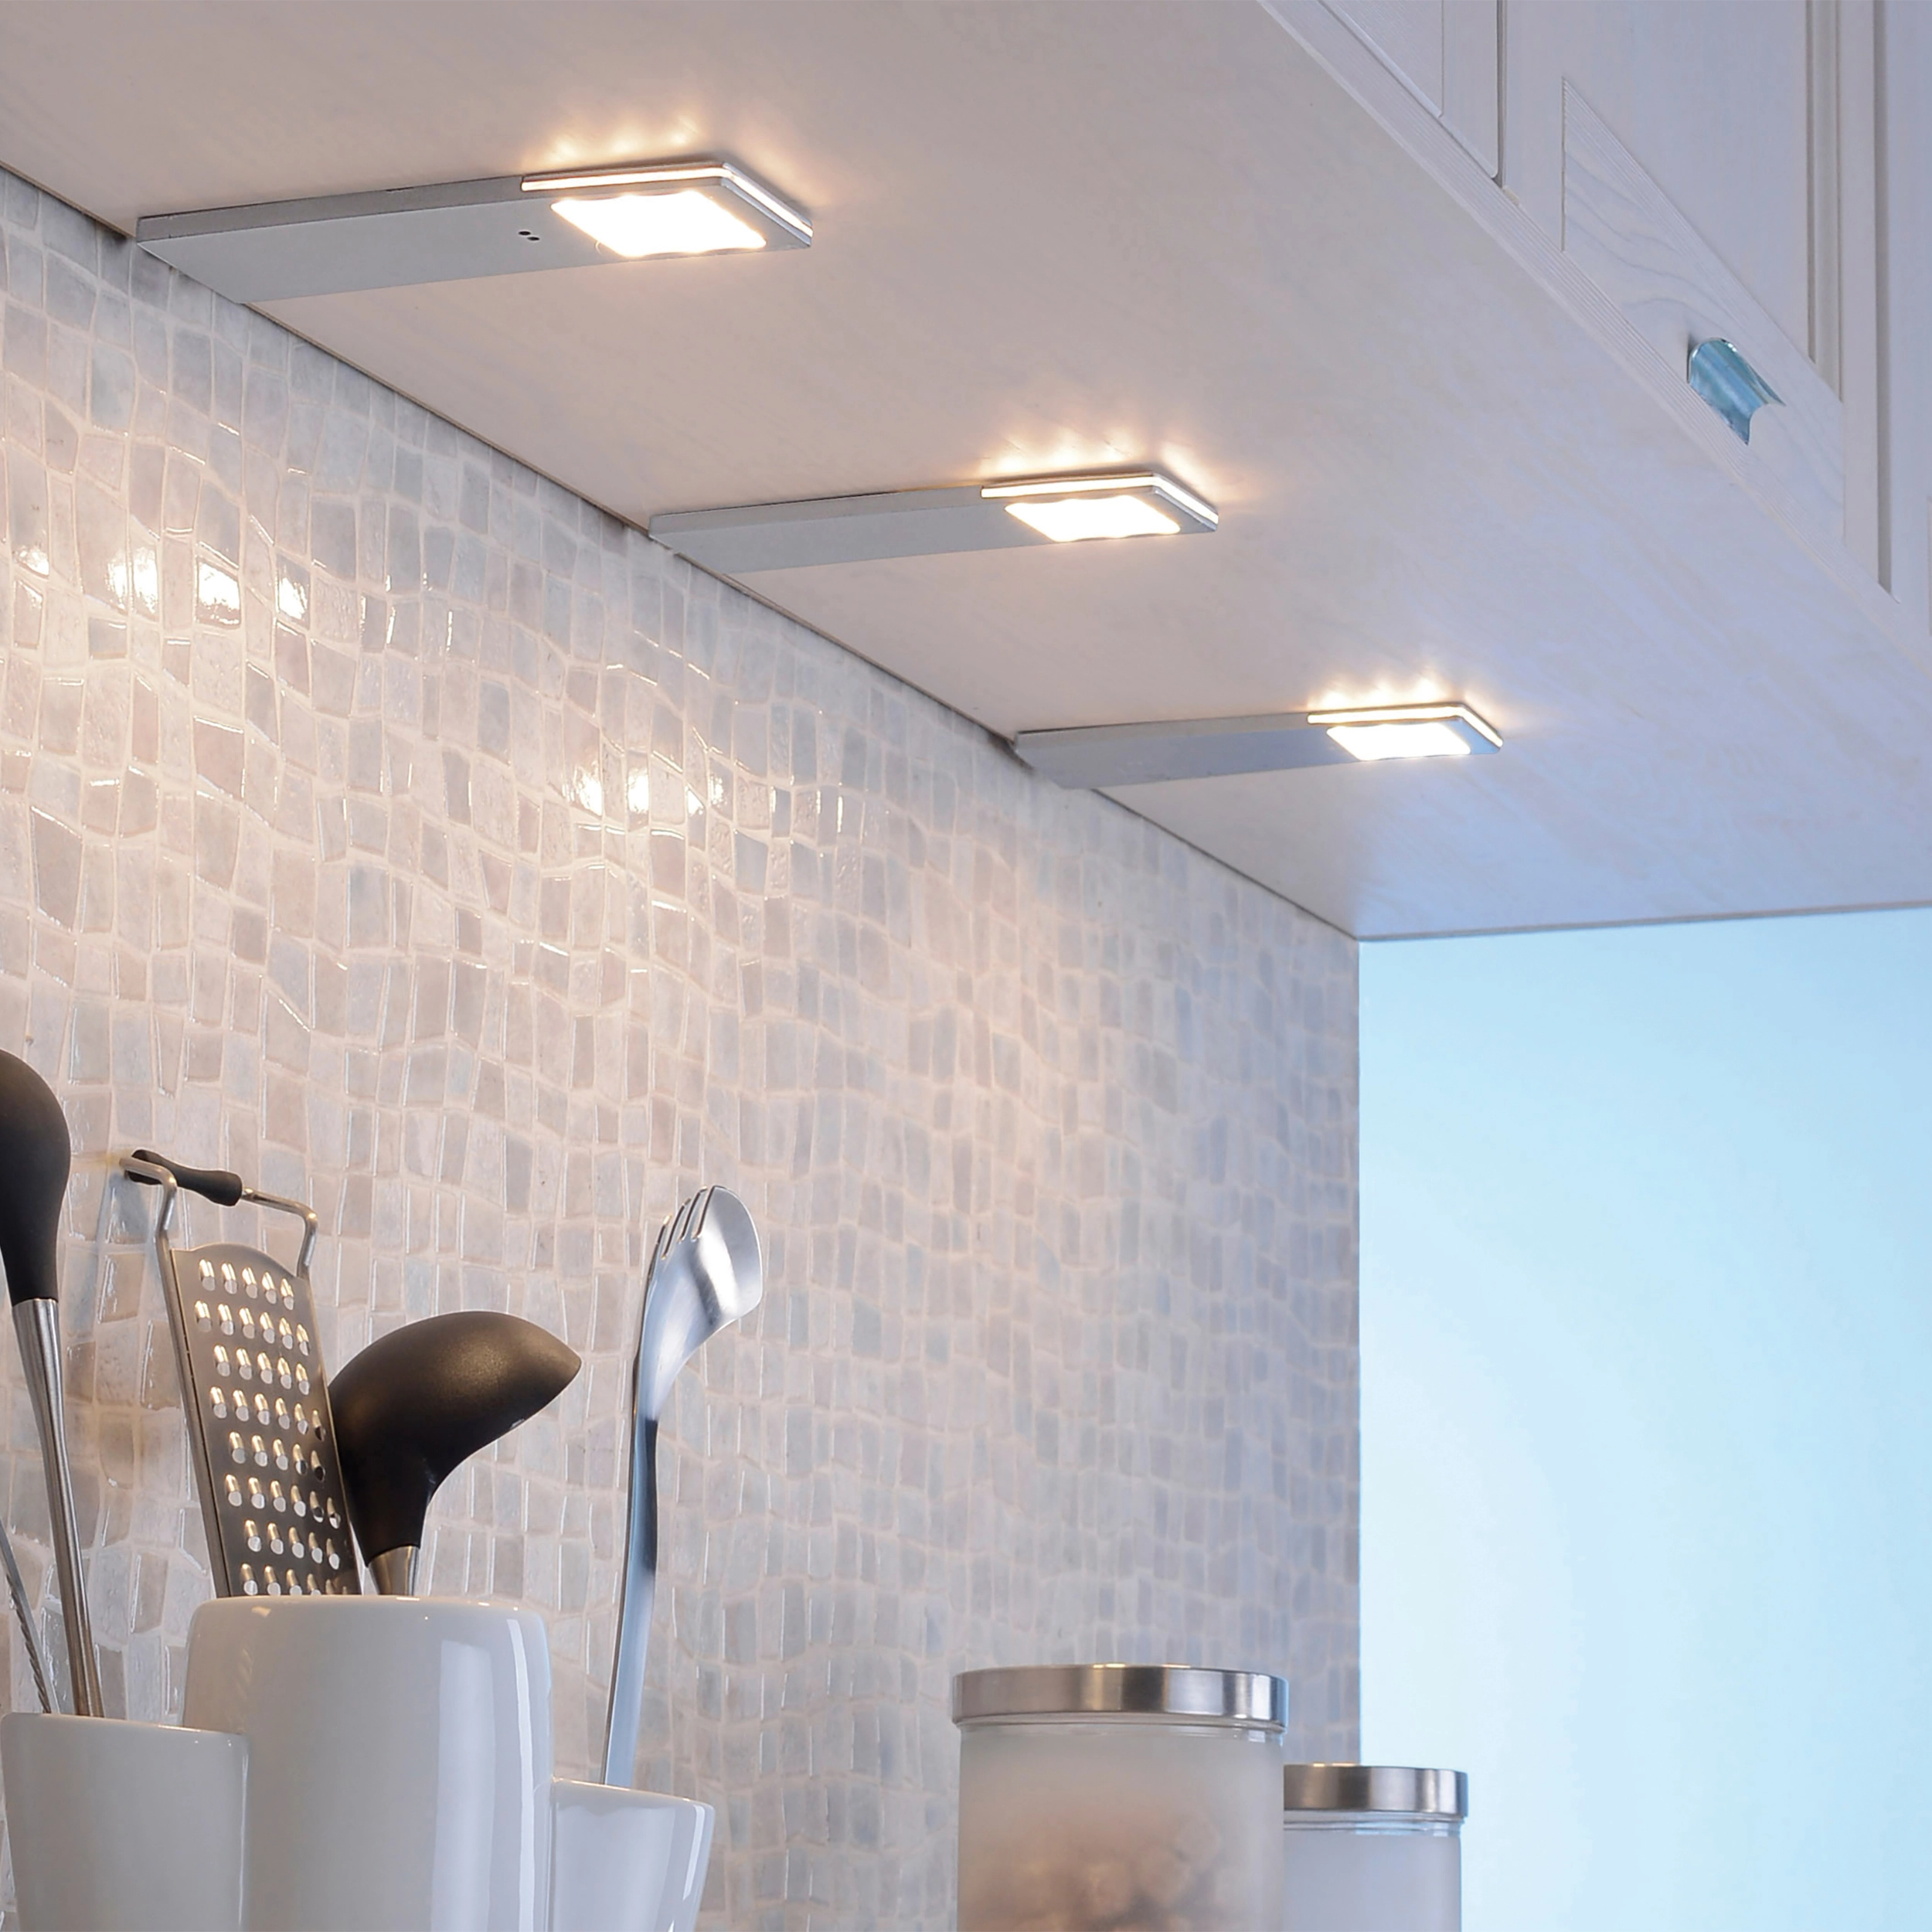 LED unterbauleuchte küche schrankbeleuchtung dimmbar mit